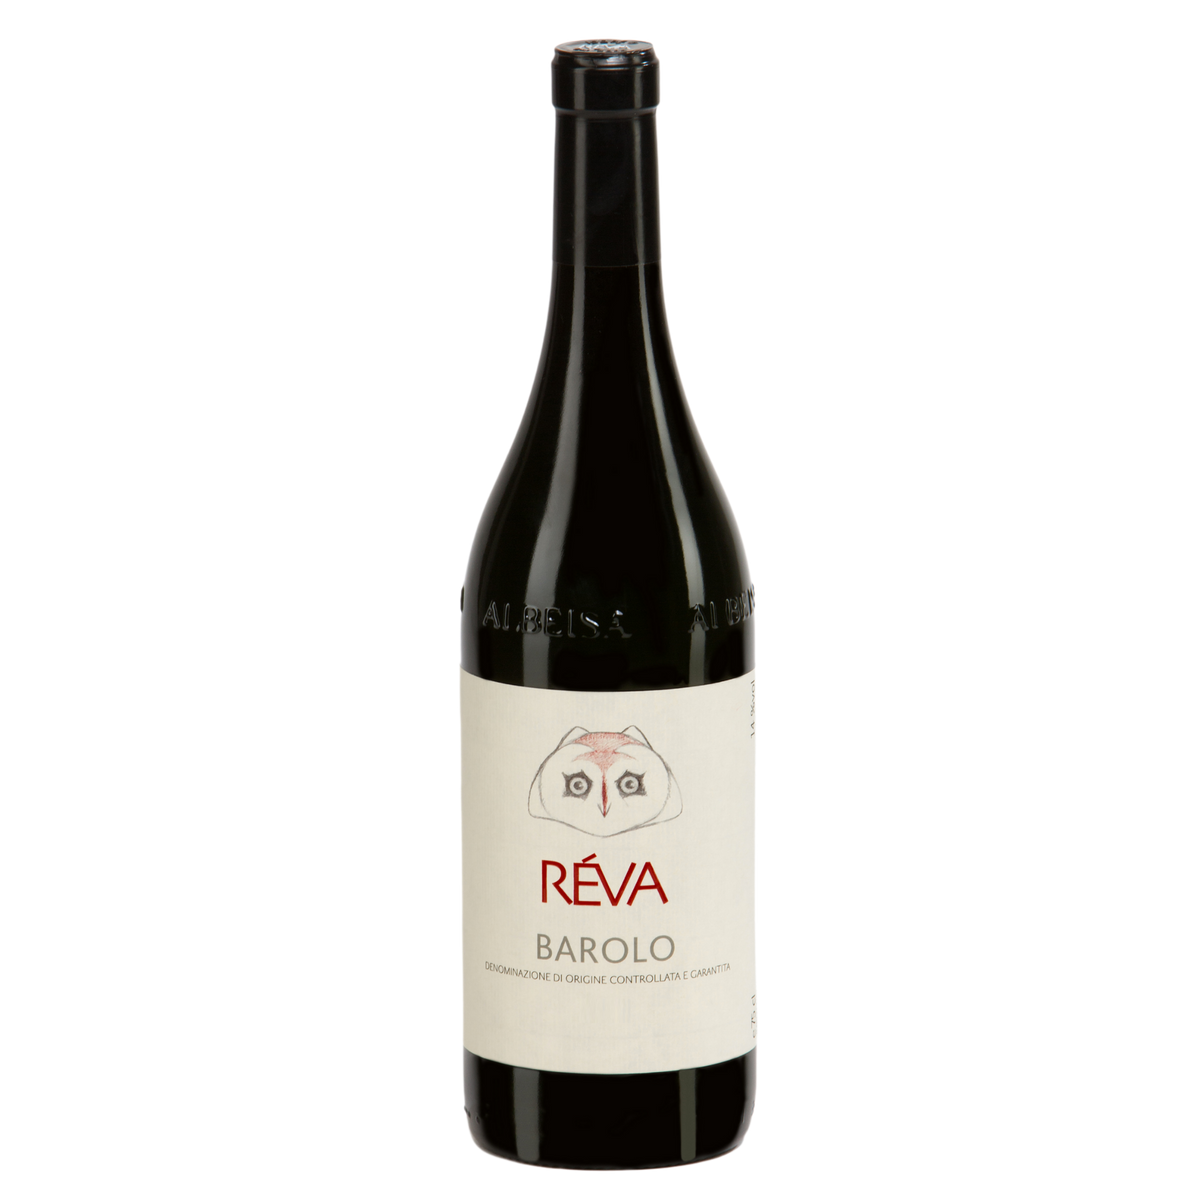 Reva, Barolo 750 ml (2011)